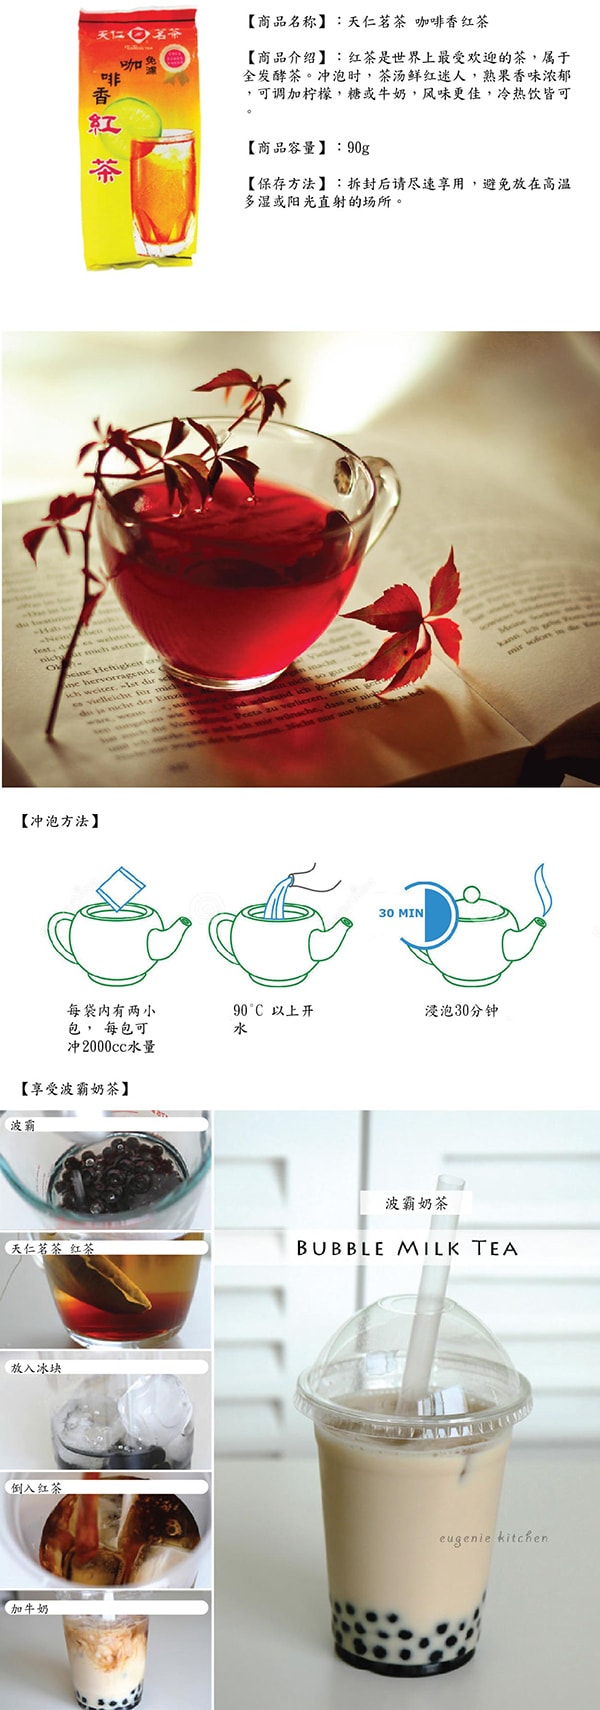 天仁茗茶  免滤咖啡香红茶 200g